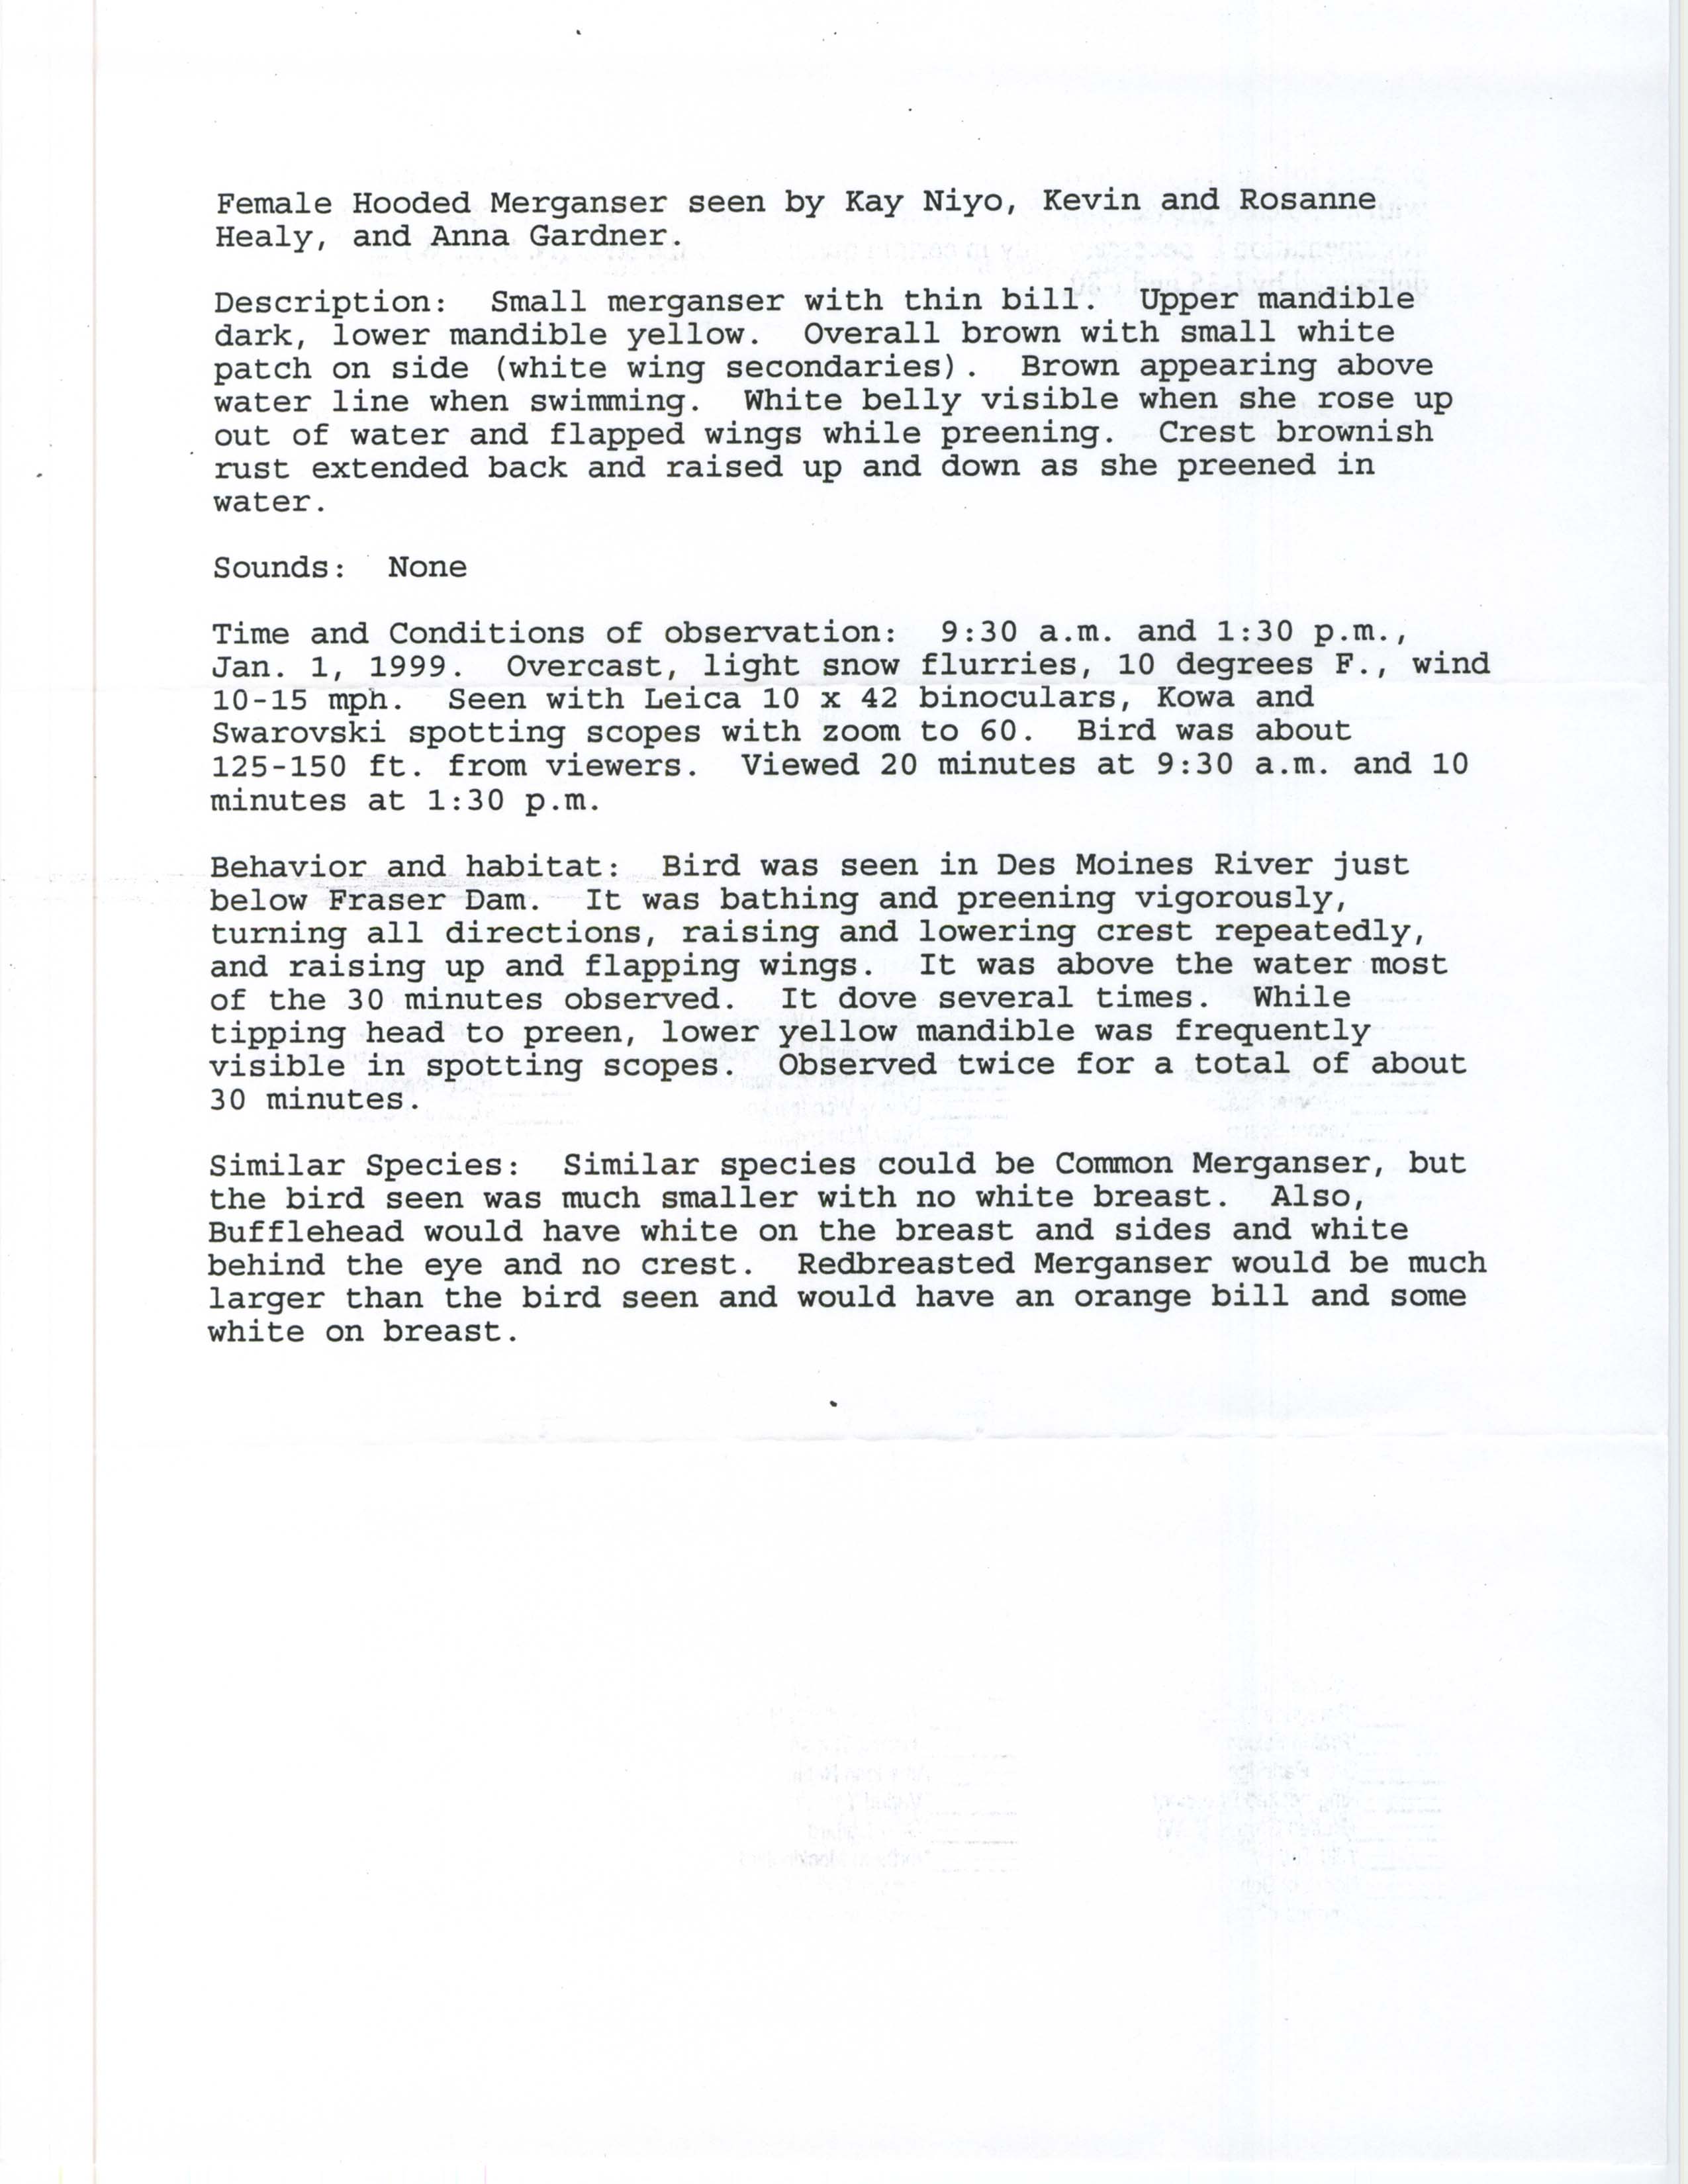 Rare bird documentation form for Hooded Merganser at Fraser Dam, 1999